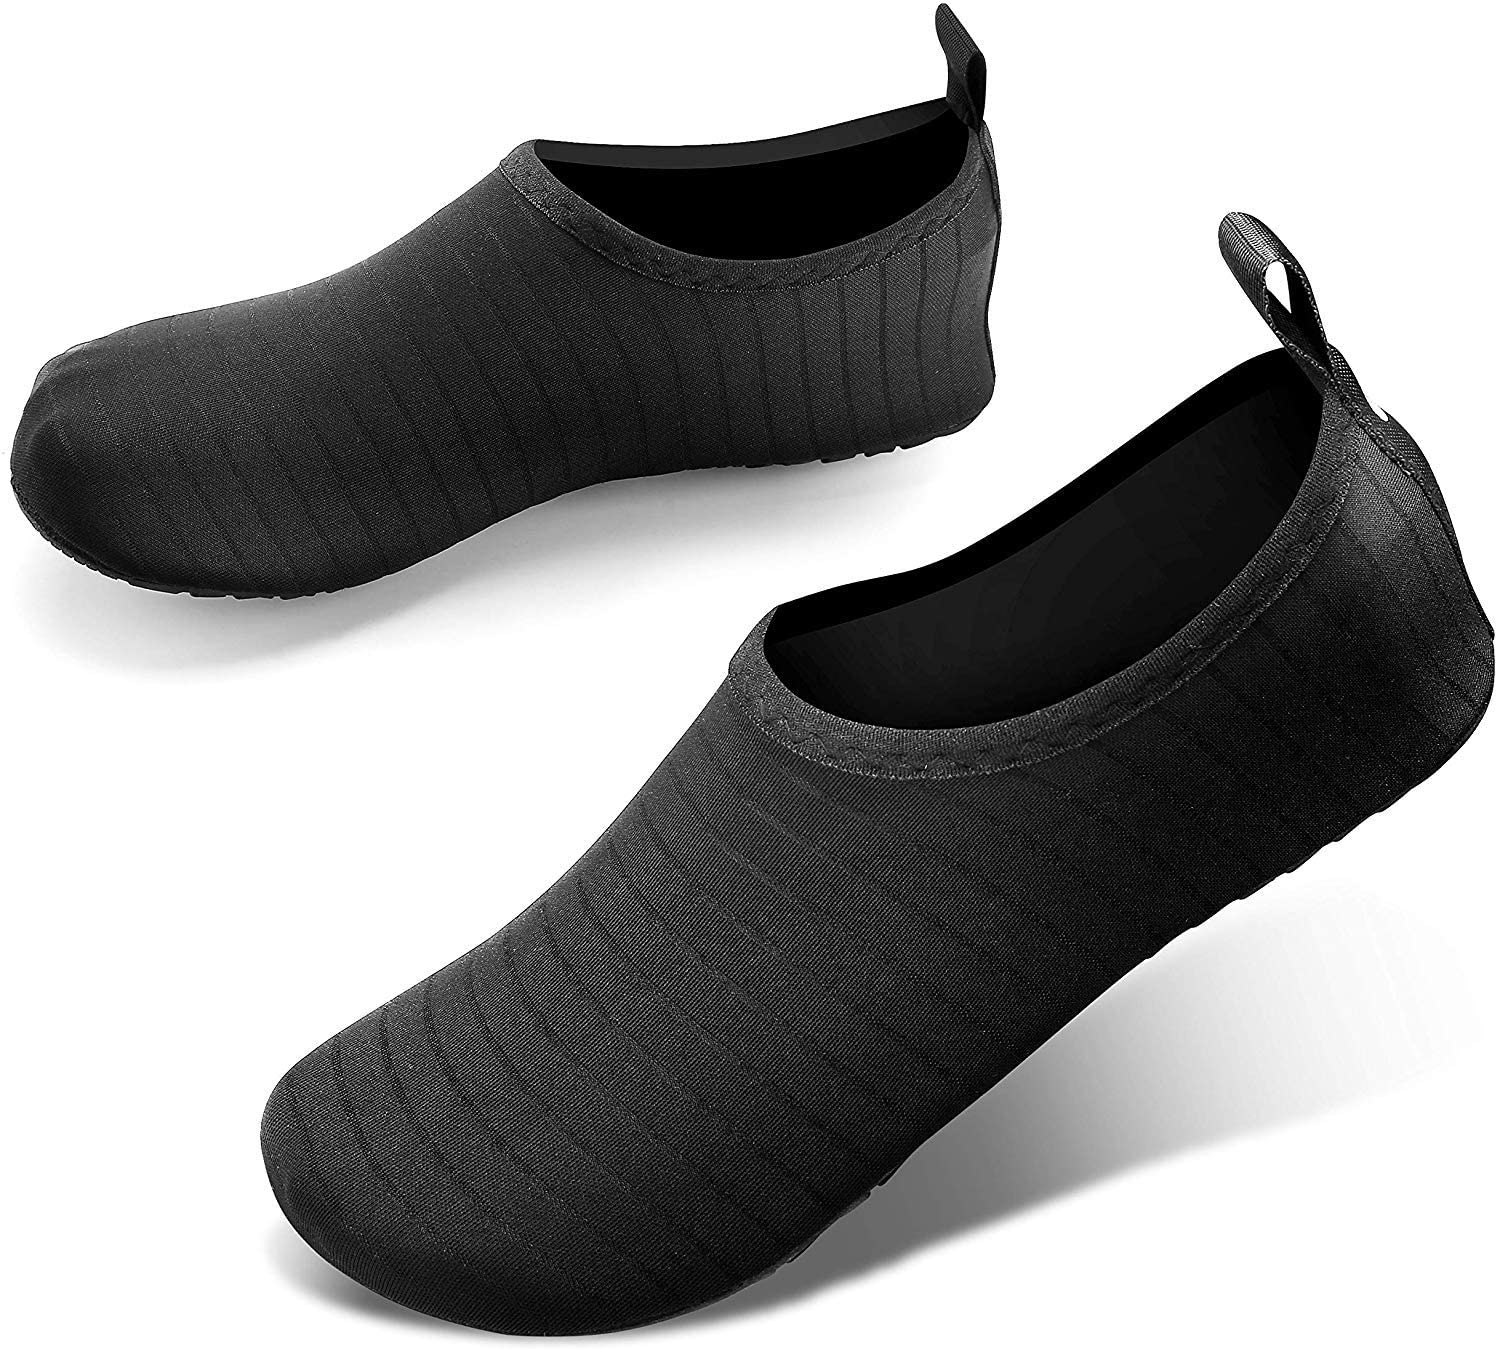 Non slip waterproof shoes | YogaMatStore